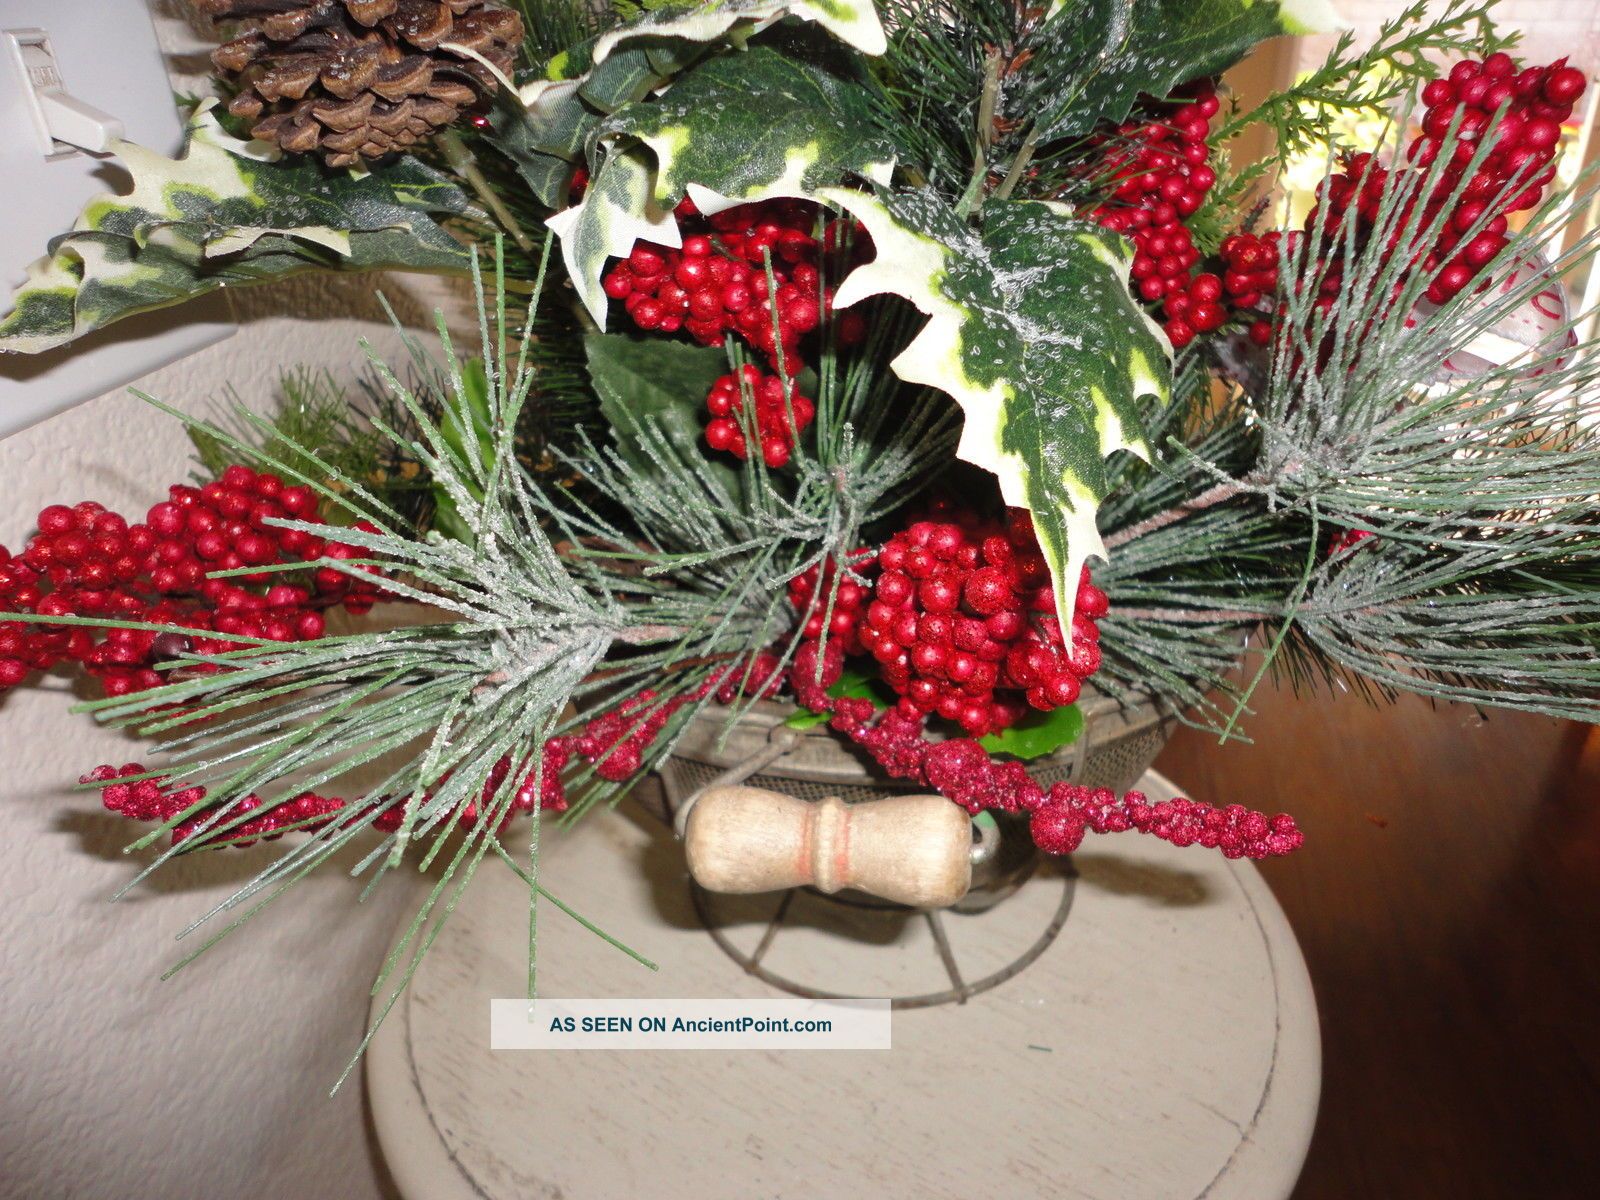 Primitive Christmas Floral Arrangements HD Wallpaper For Your Desktop